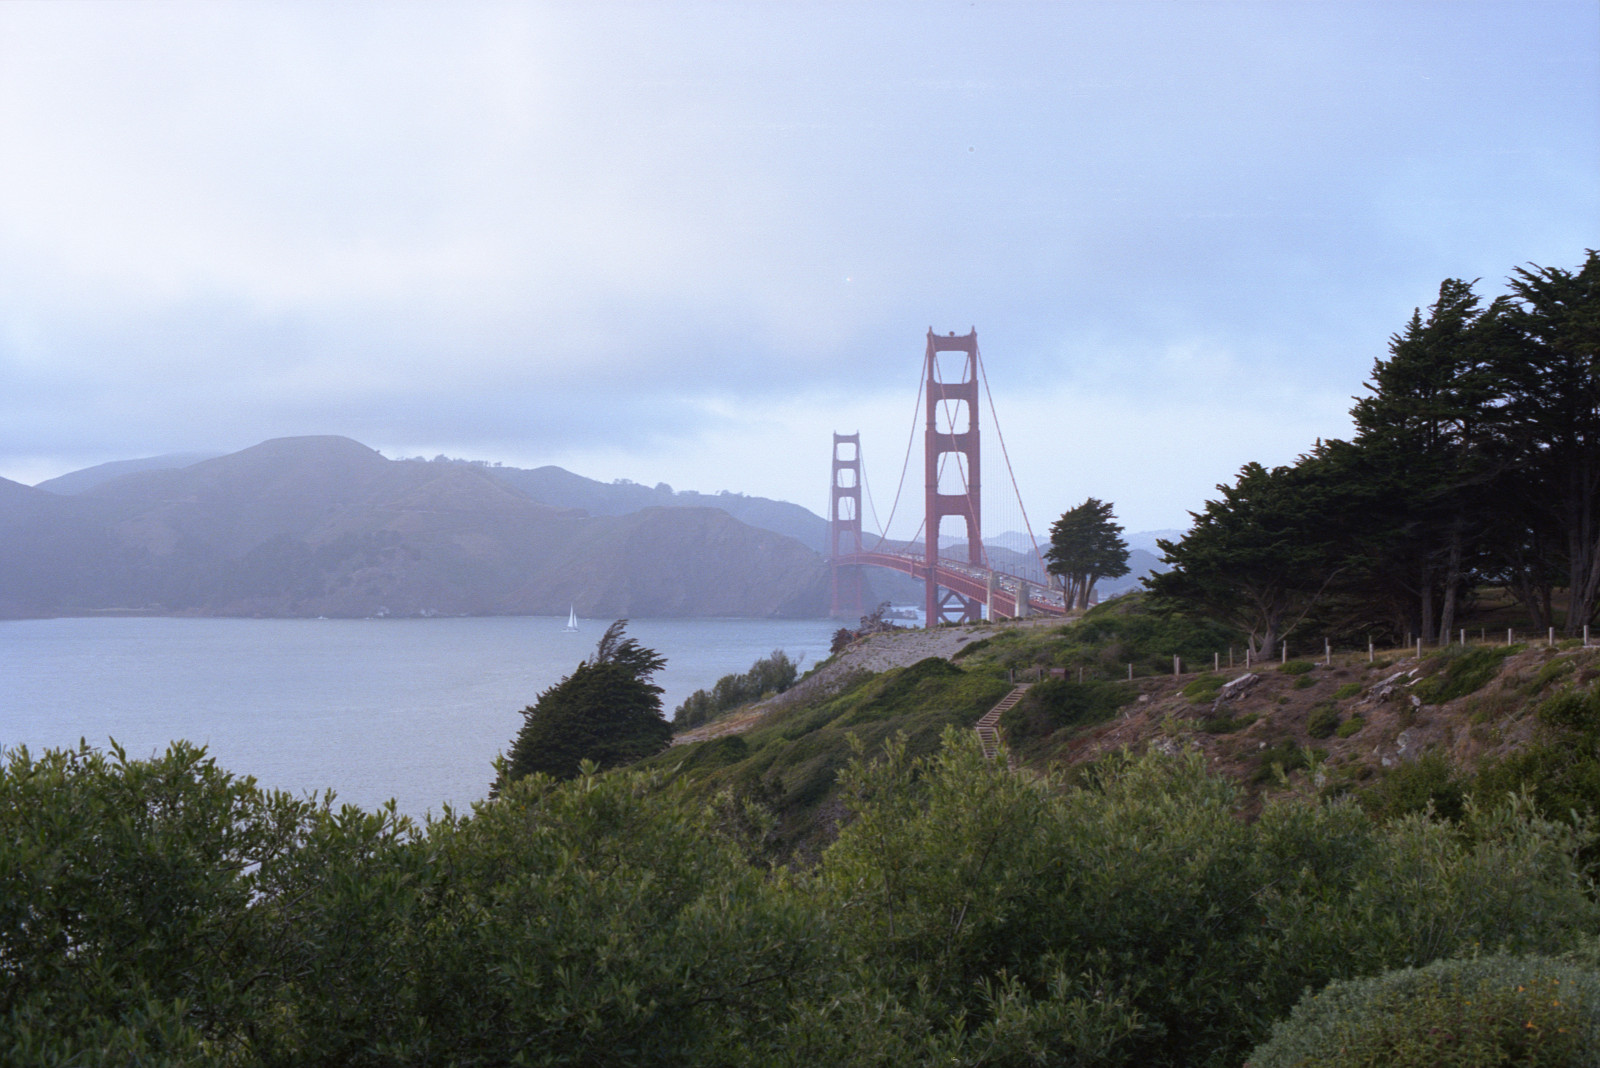 The Presidio of San Francisco.